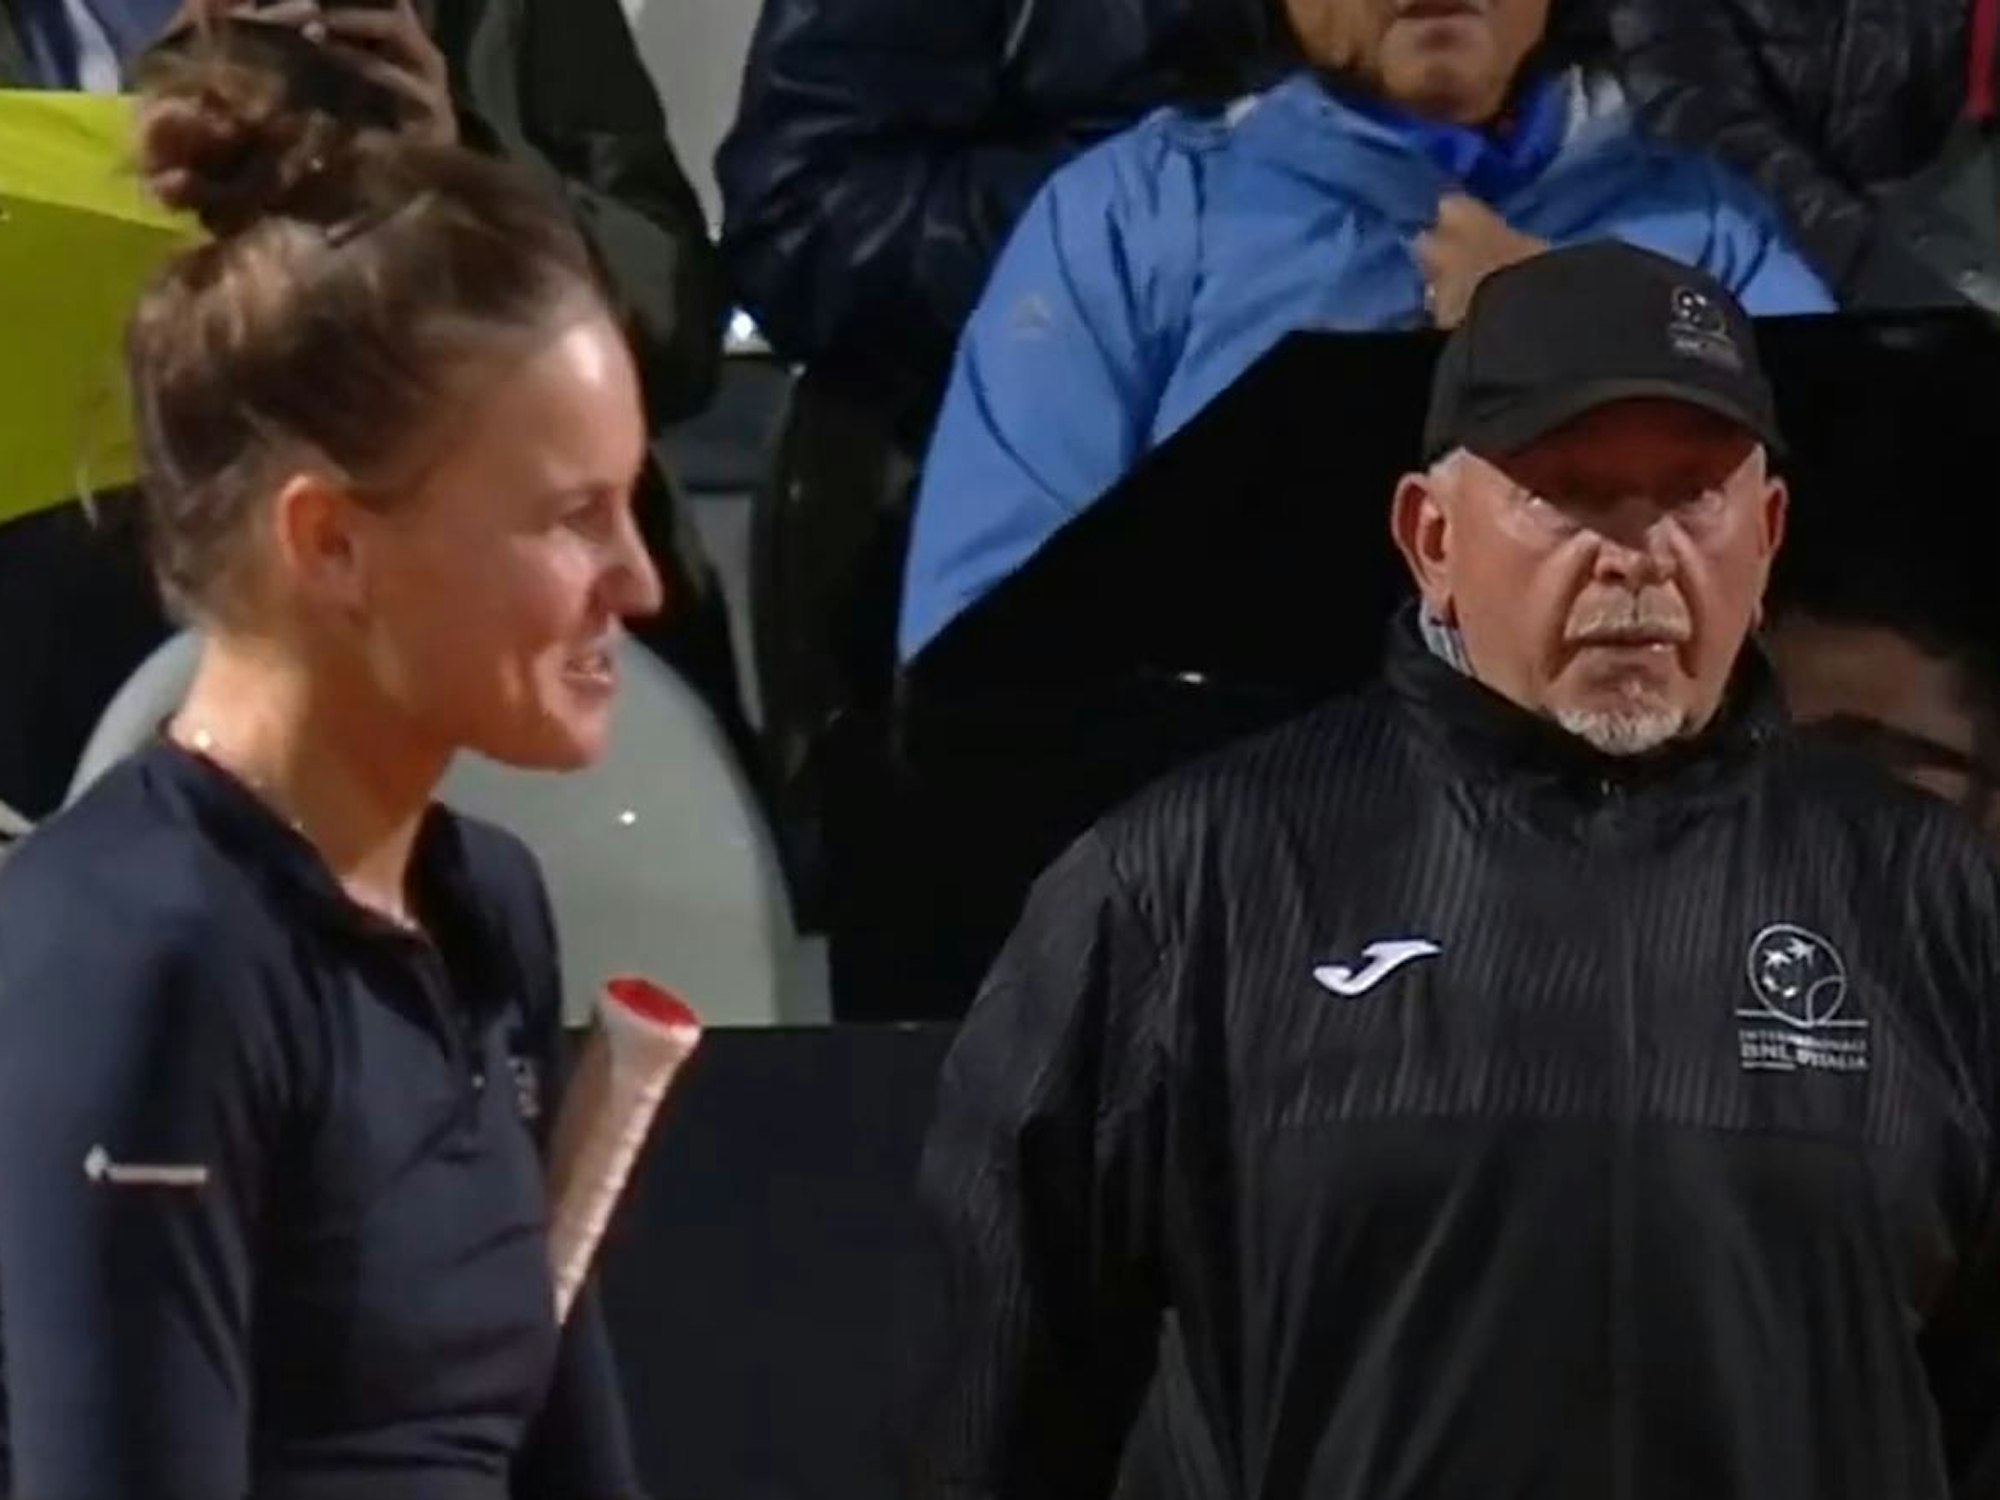 Weronika Kudermetowa diskutiert beim WTA-Turnier in Rom mit dem Schiedsrichter. Im Hintergrund ist der Linienrichter zu sehen.